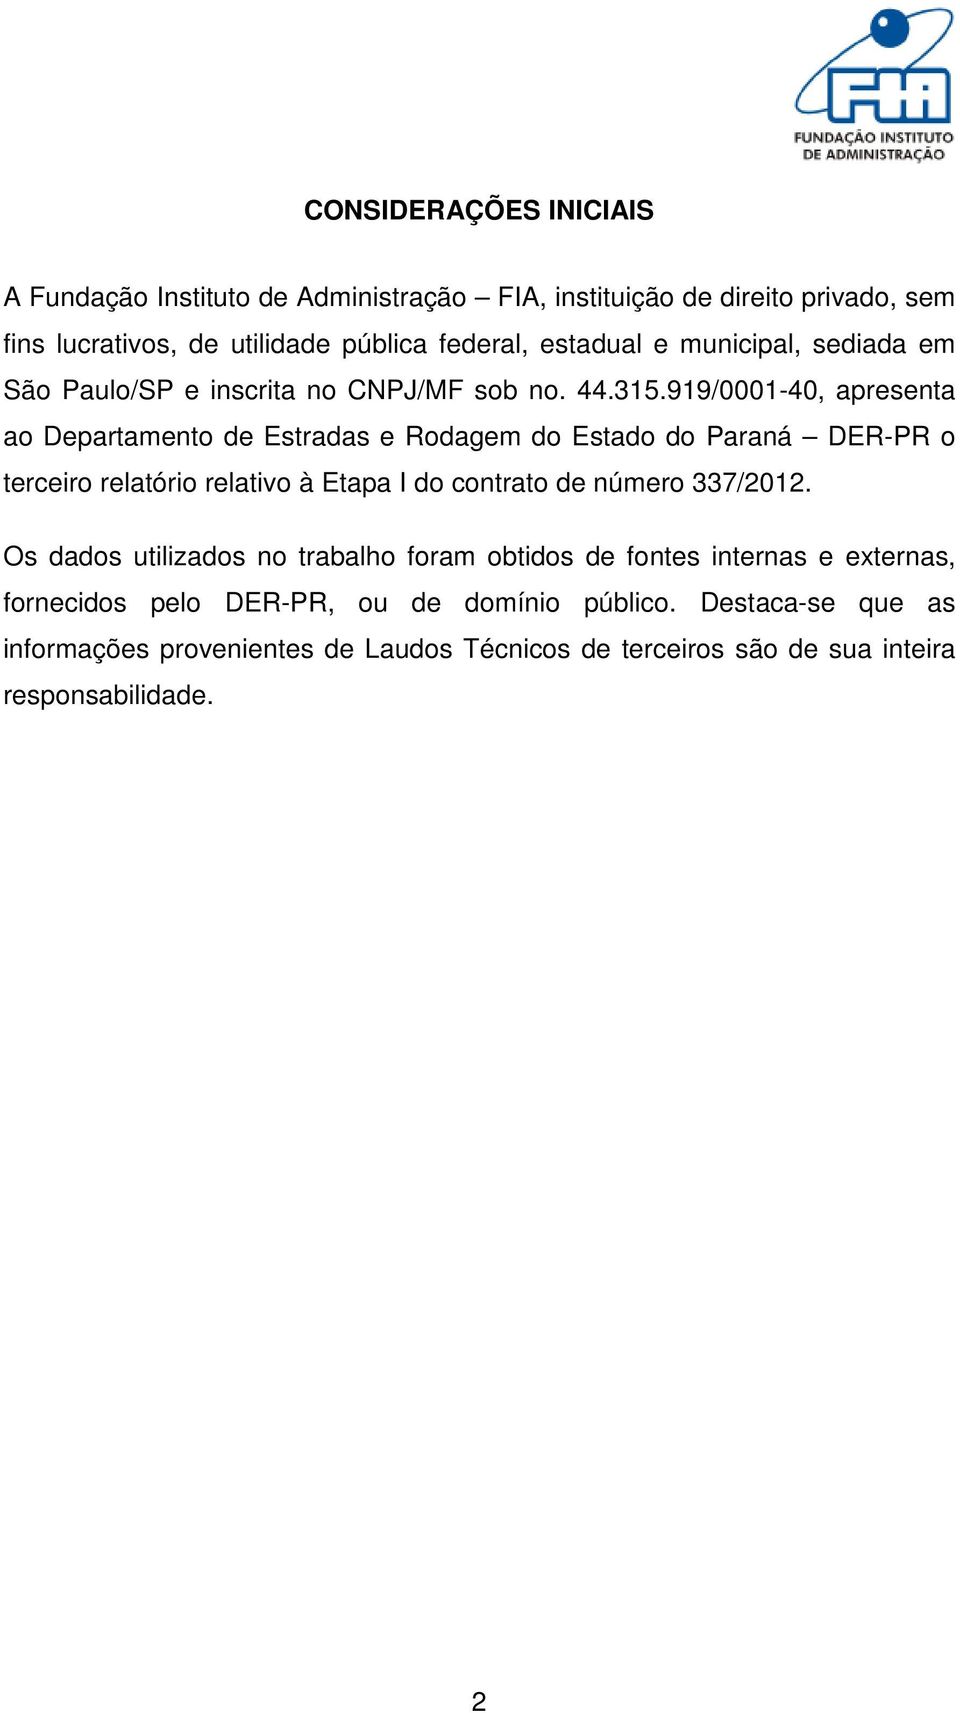 919/0001-40, apresenta ao Departamento de Estradas e Rodagem do Estado do Paraná DER-PR o terceiro relatório relativo à Etapa I do contrato de número